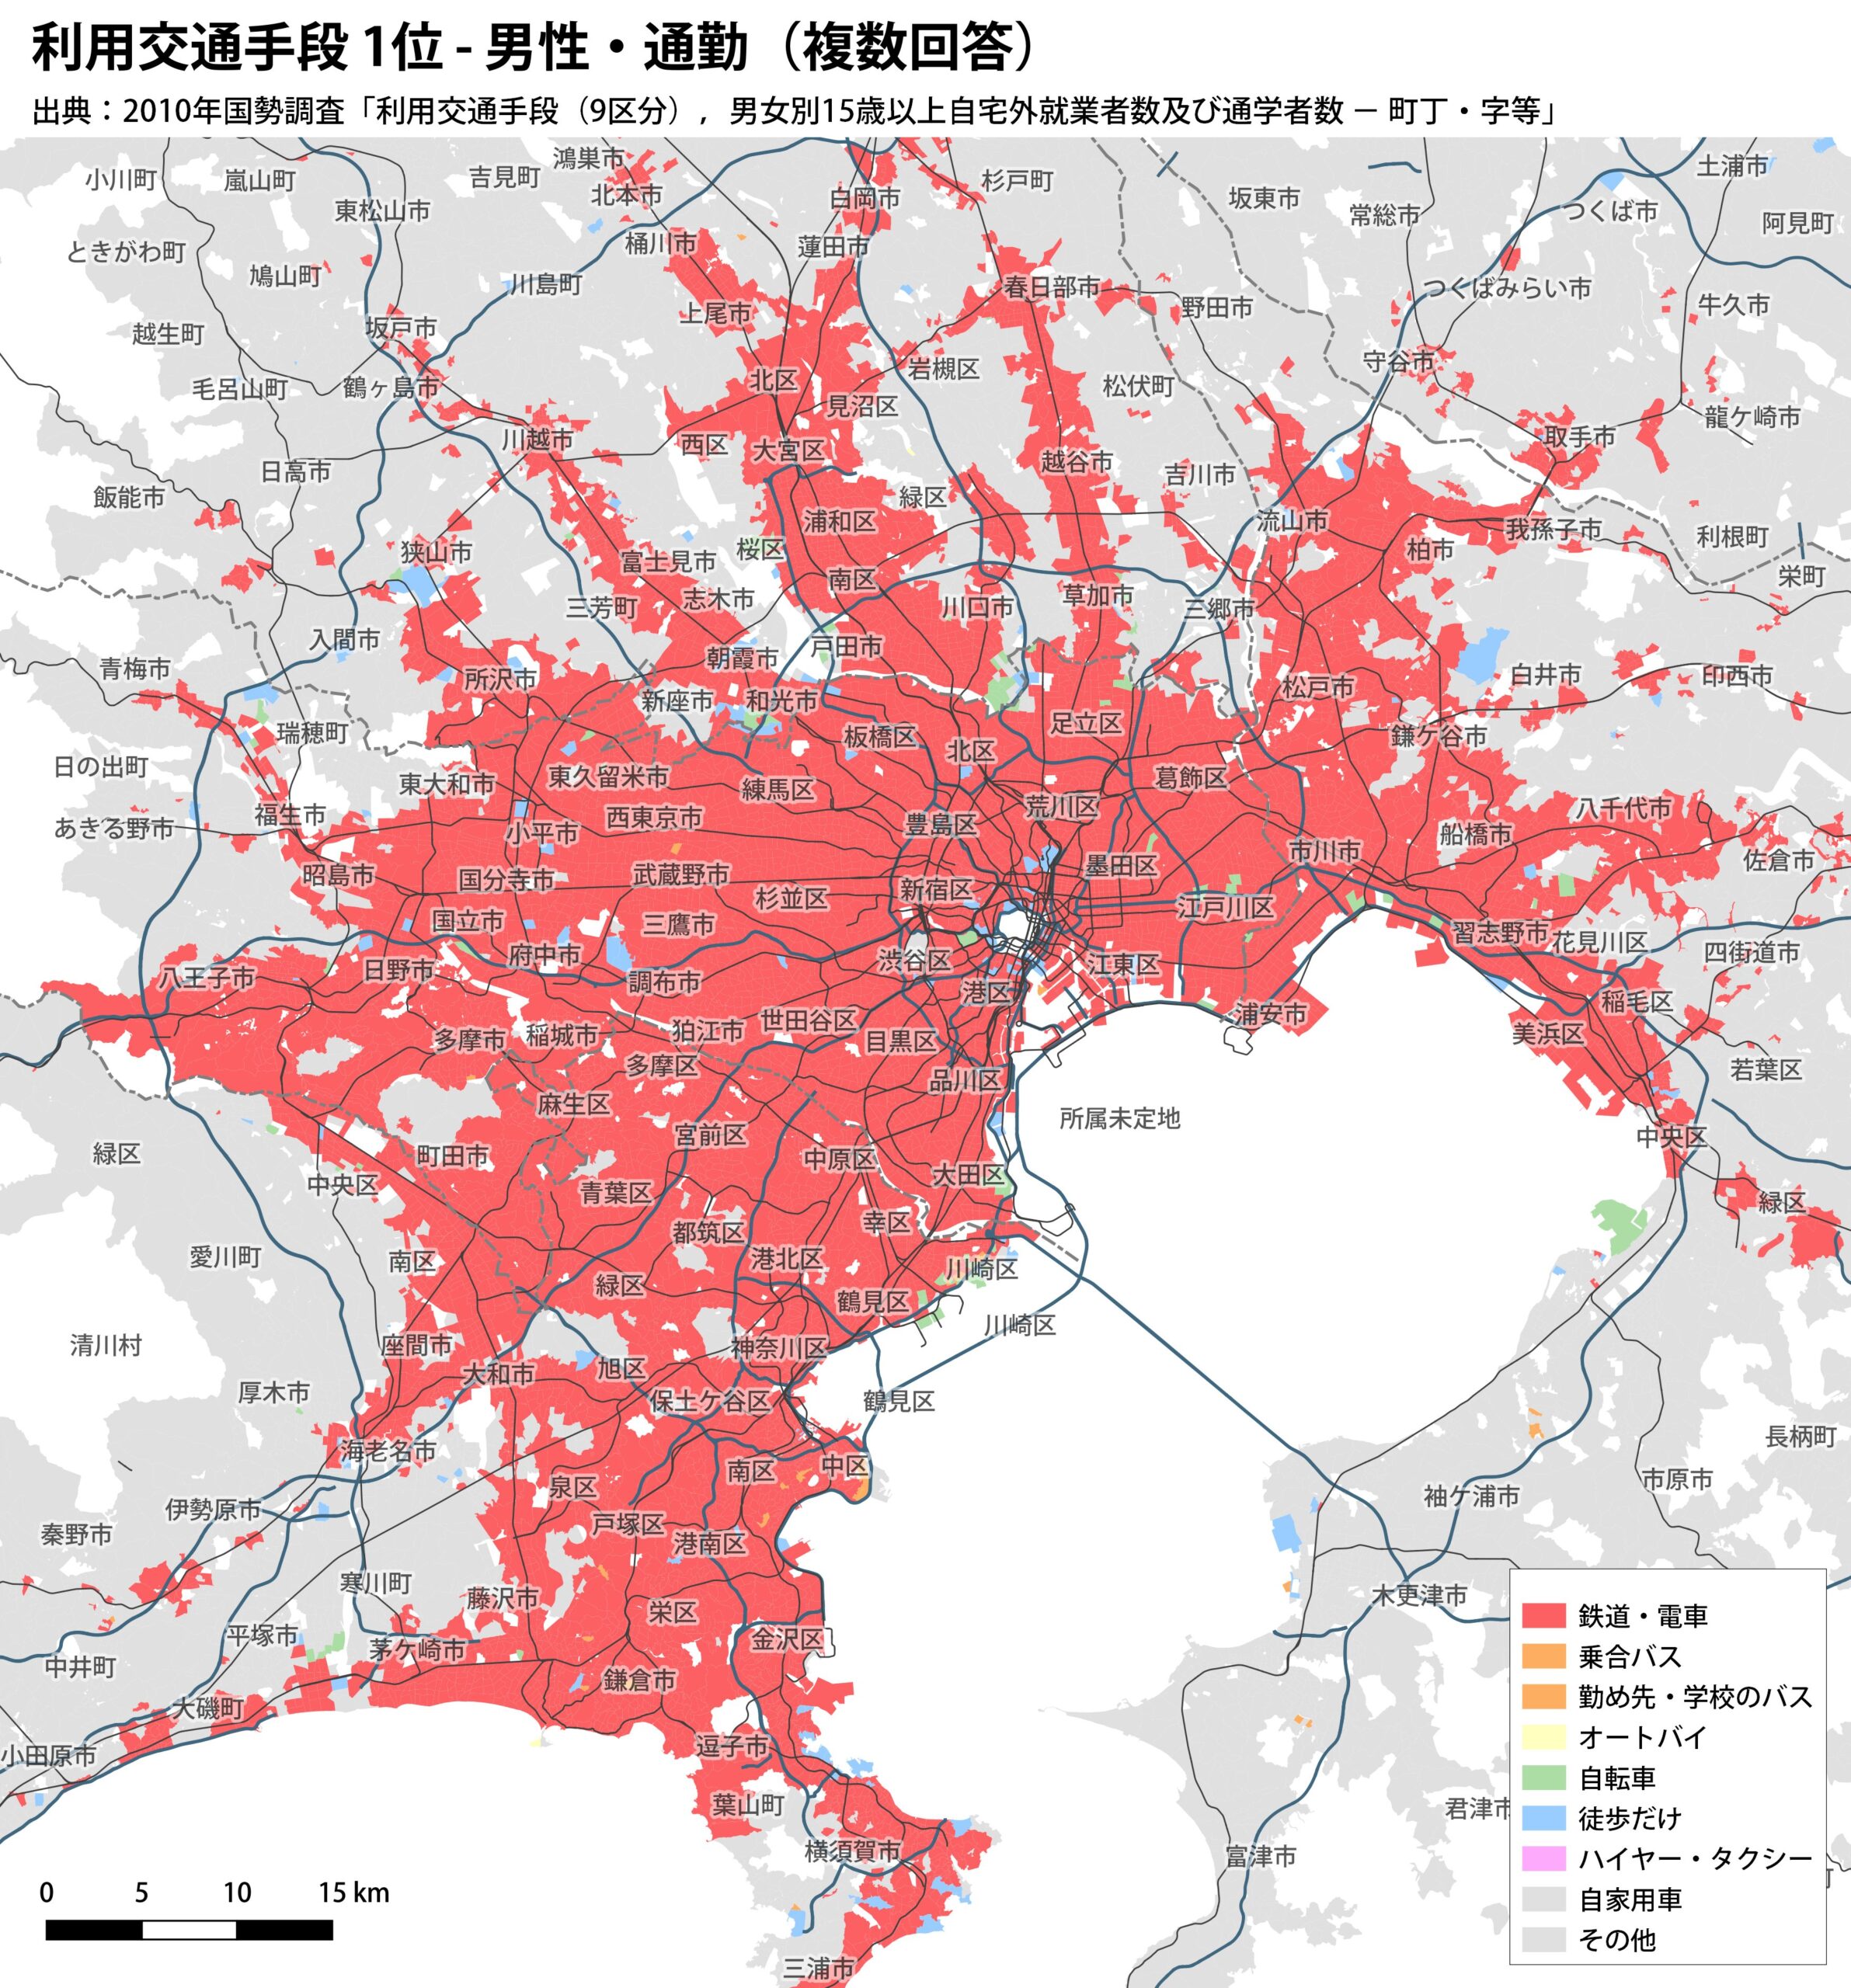 関東地方の非車社会